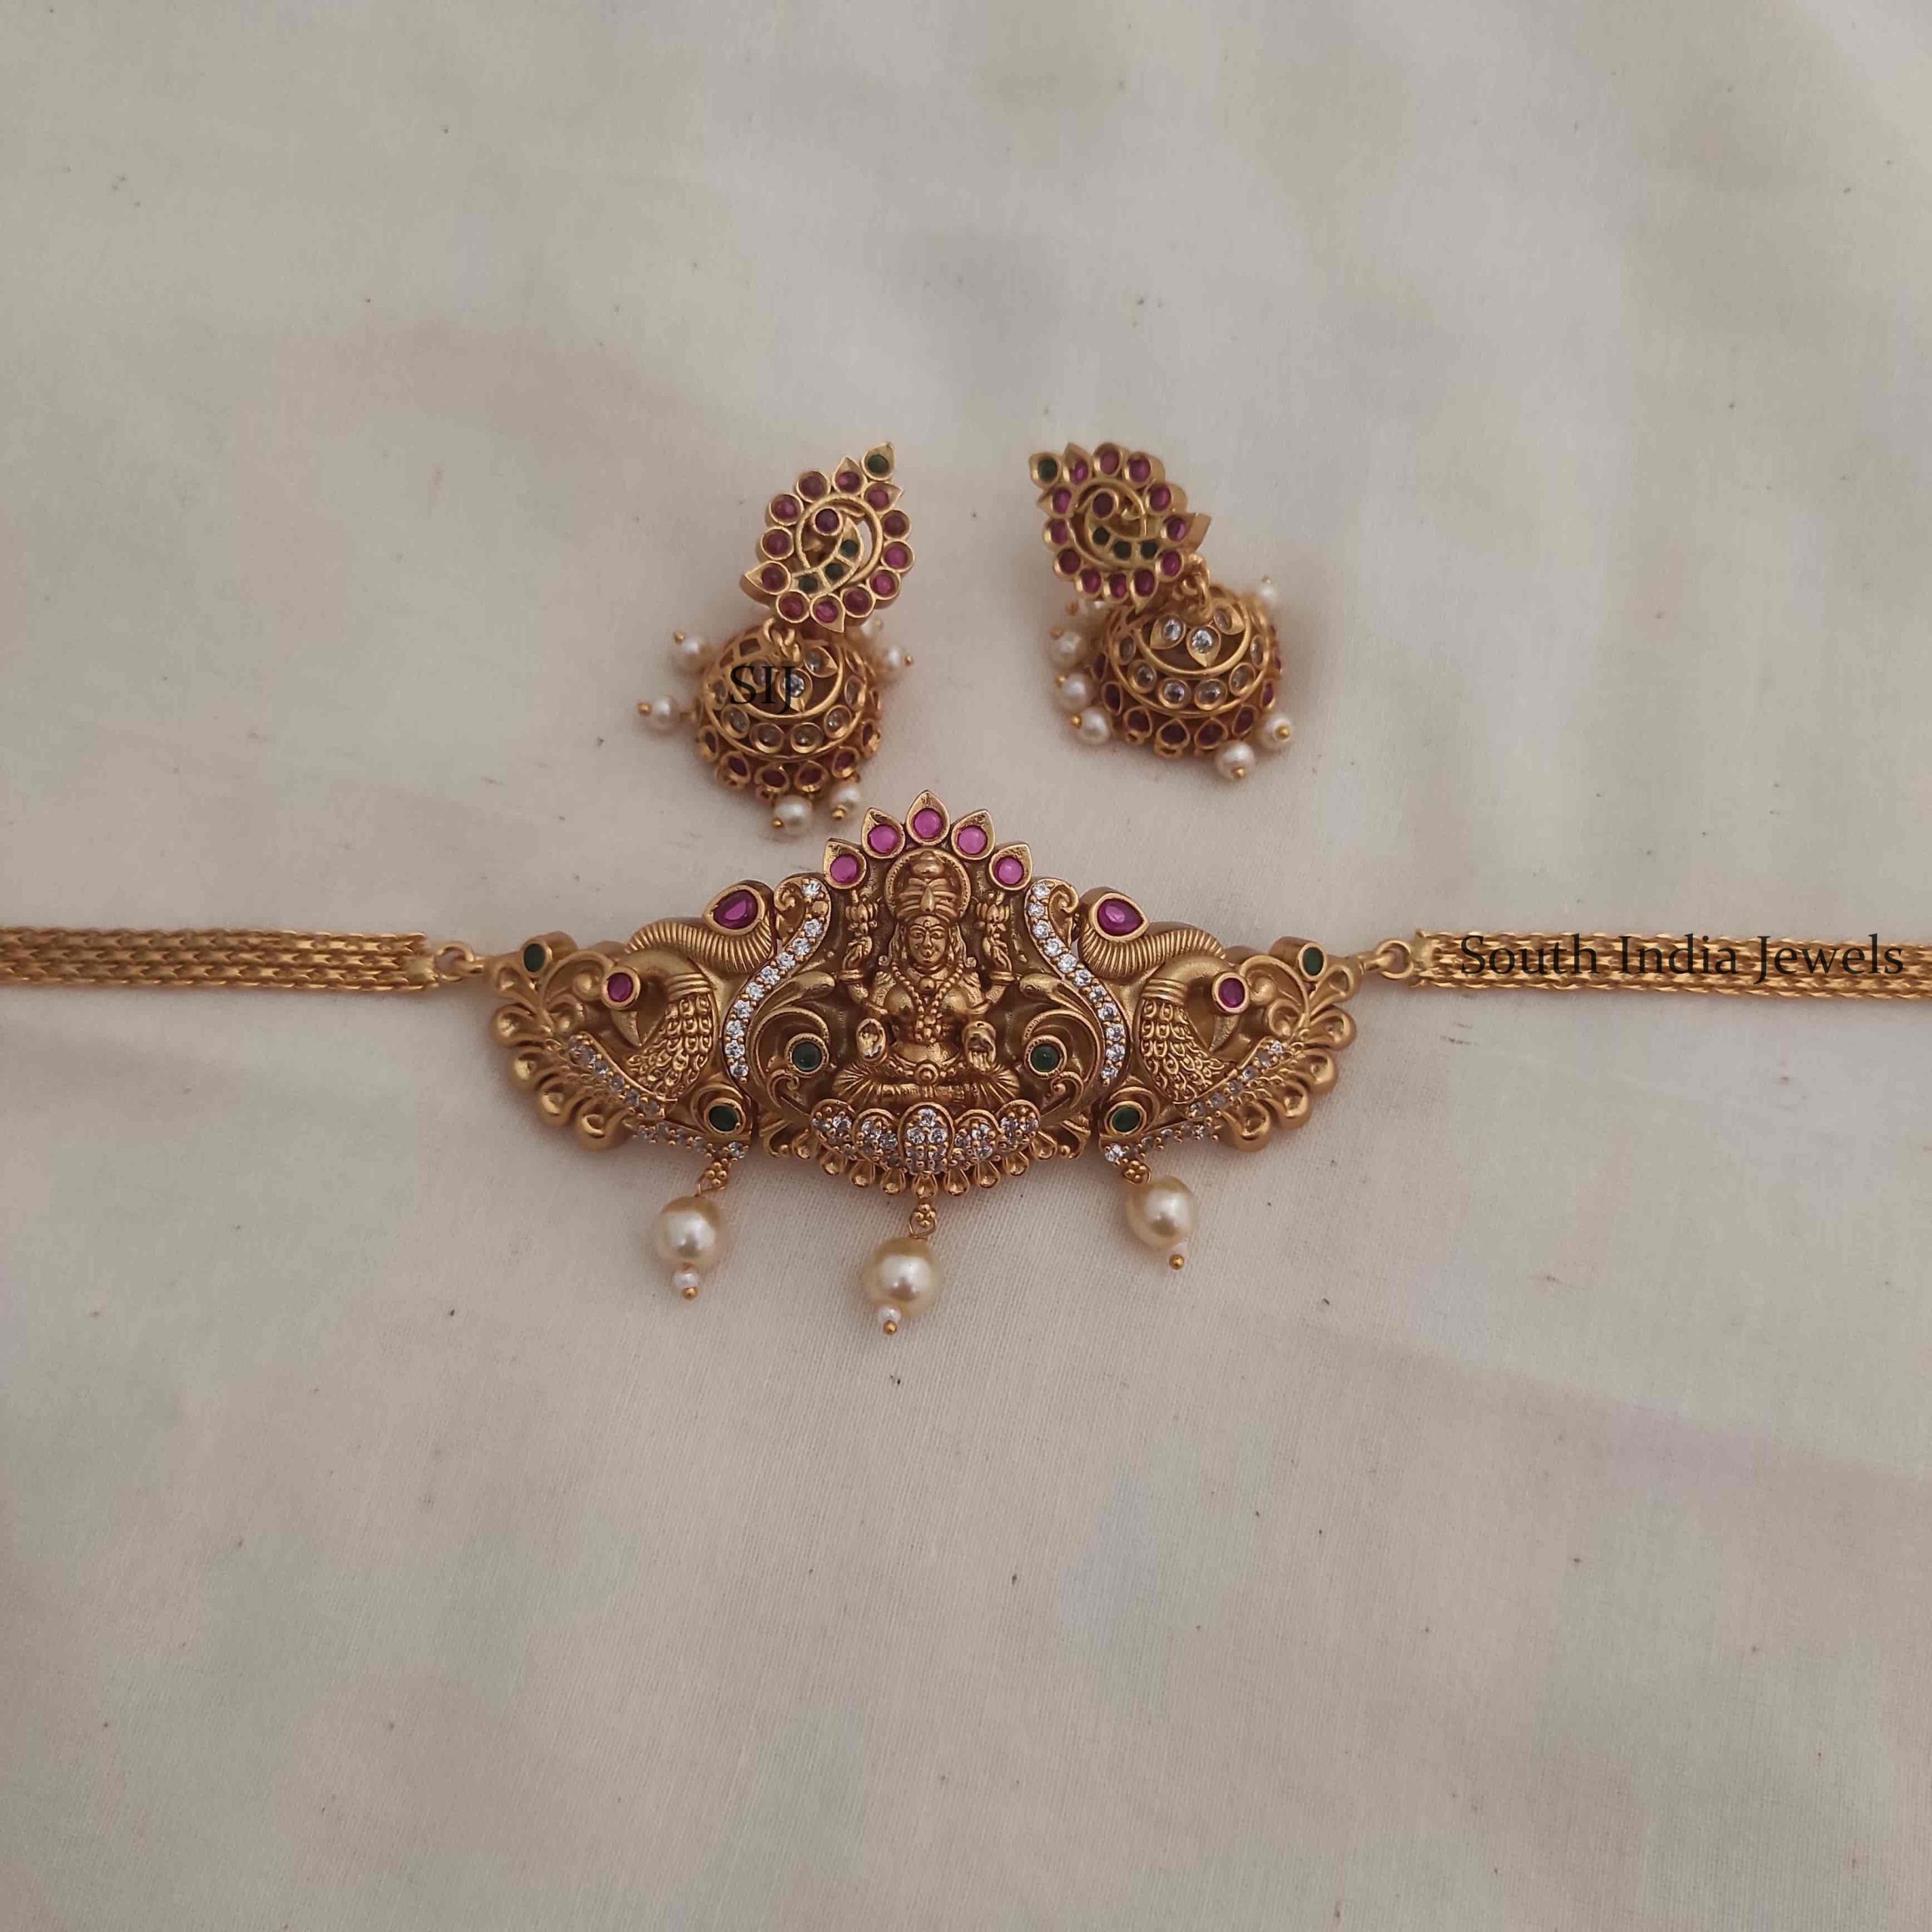 Beautiful Lakshmi design choker comes along with matching earrings.